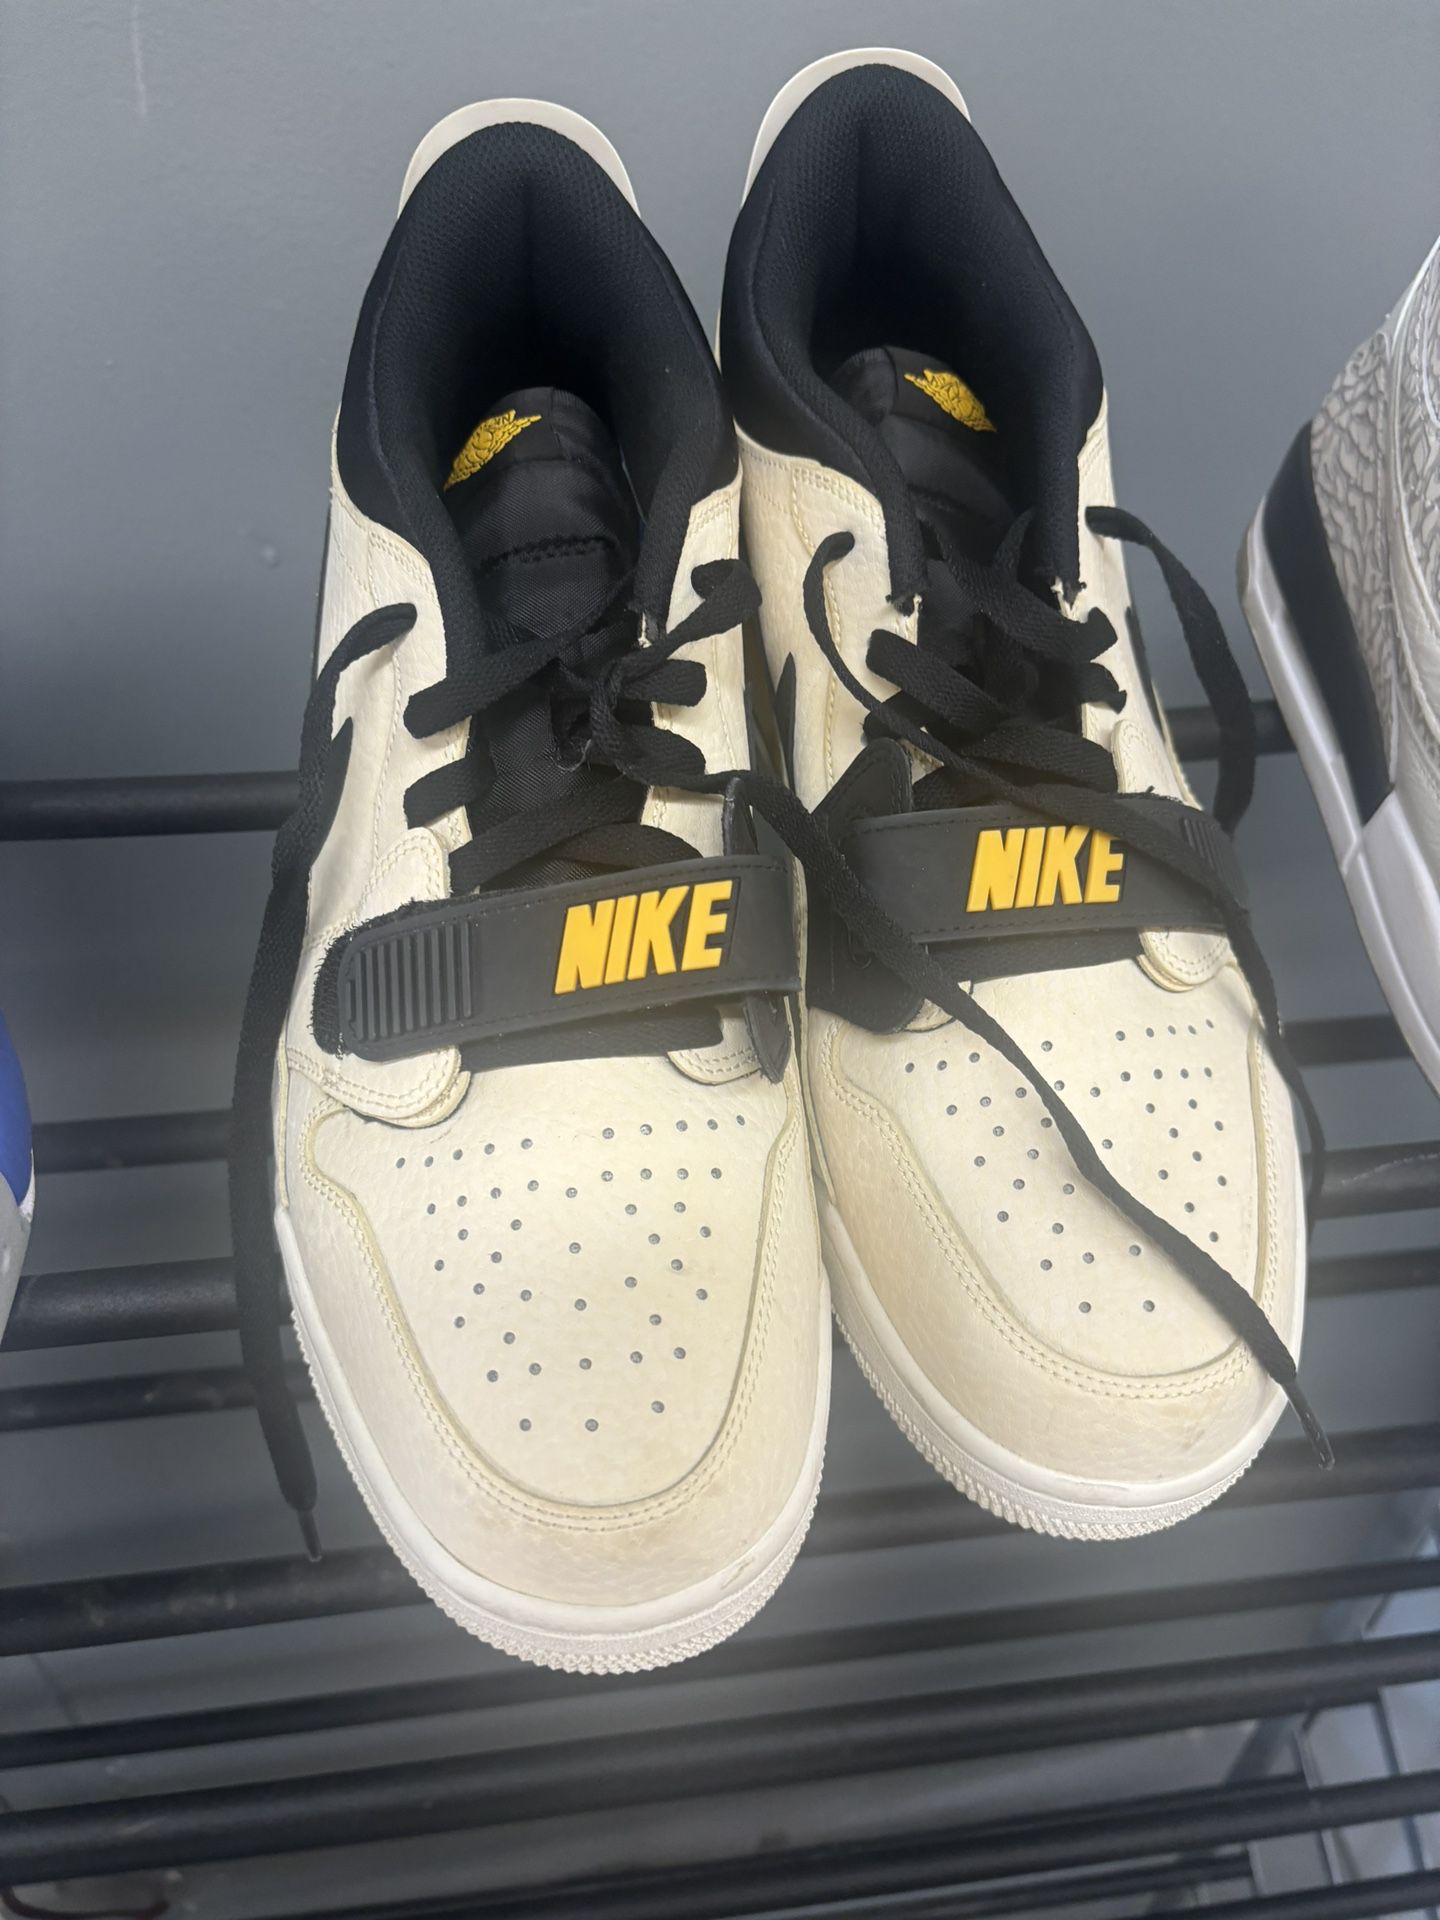 Like New Nike Shoes